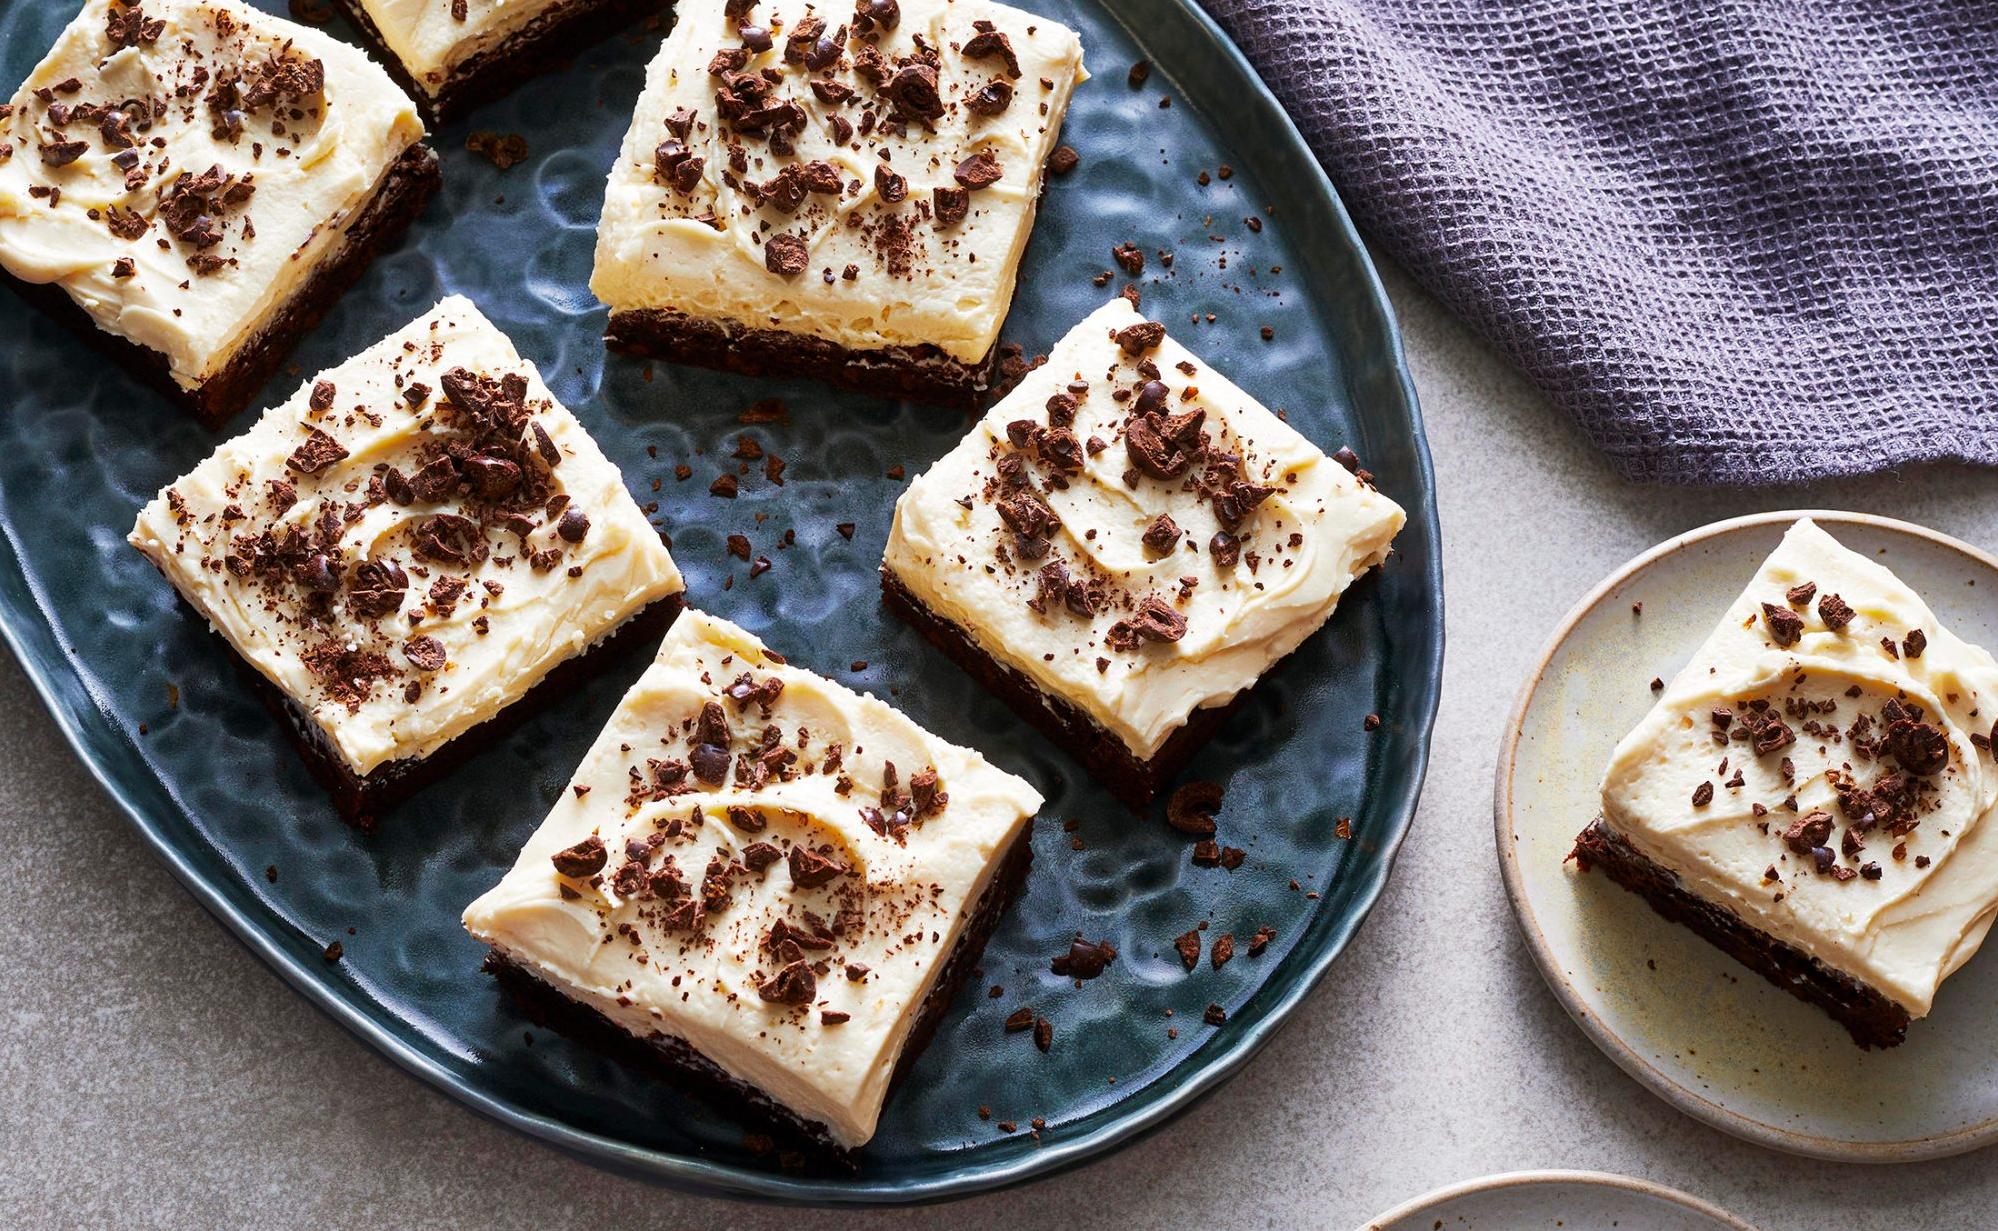  Warning: These brownies may be addictive!